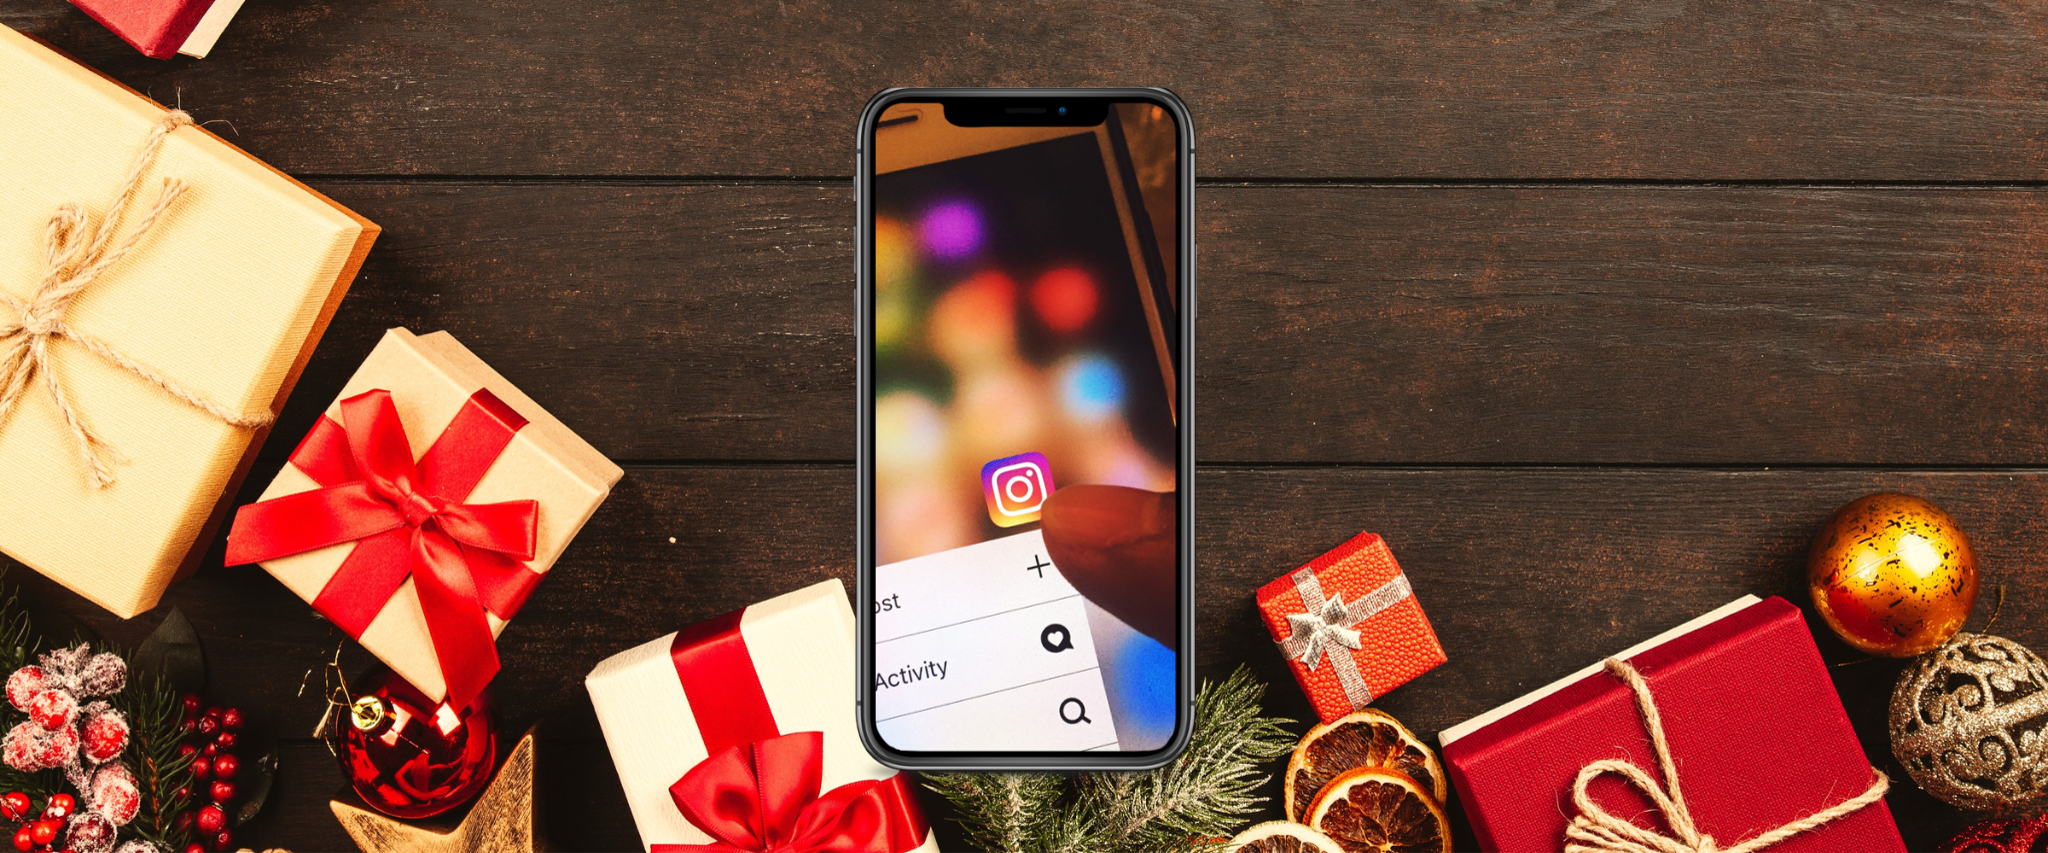 Handy auf einem Weihnachtstisch voller Geschenke, welches das Instagram Logo zeigt